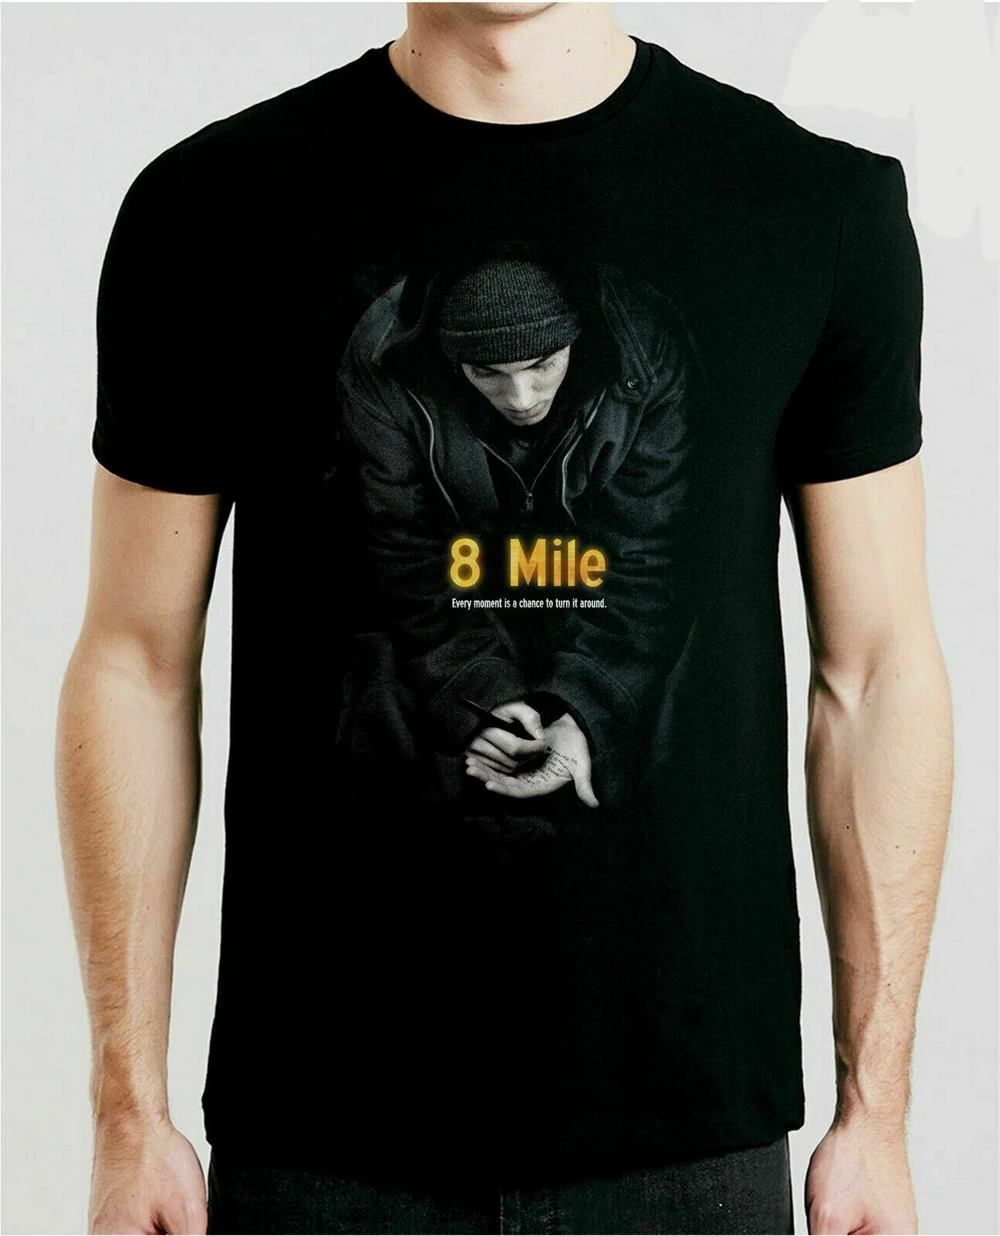 Kleding Gender-neutrale kleding volwassenen Tops & T-shirts T-shirts Vintage jaren 00 Film Promo 8 Mile Eminem Shirt 